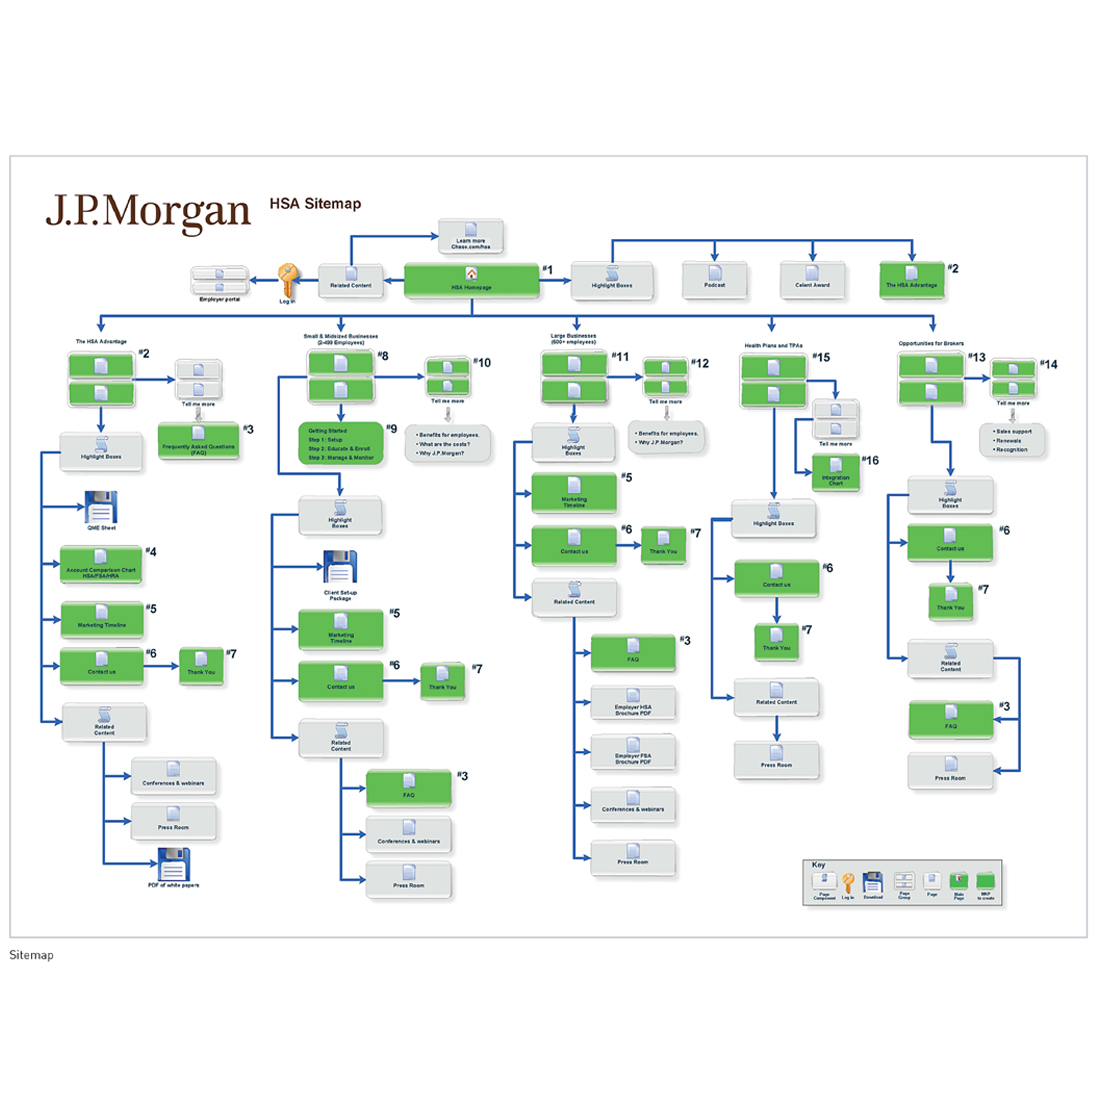 JPMorgan HSA Sitemap